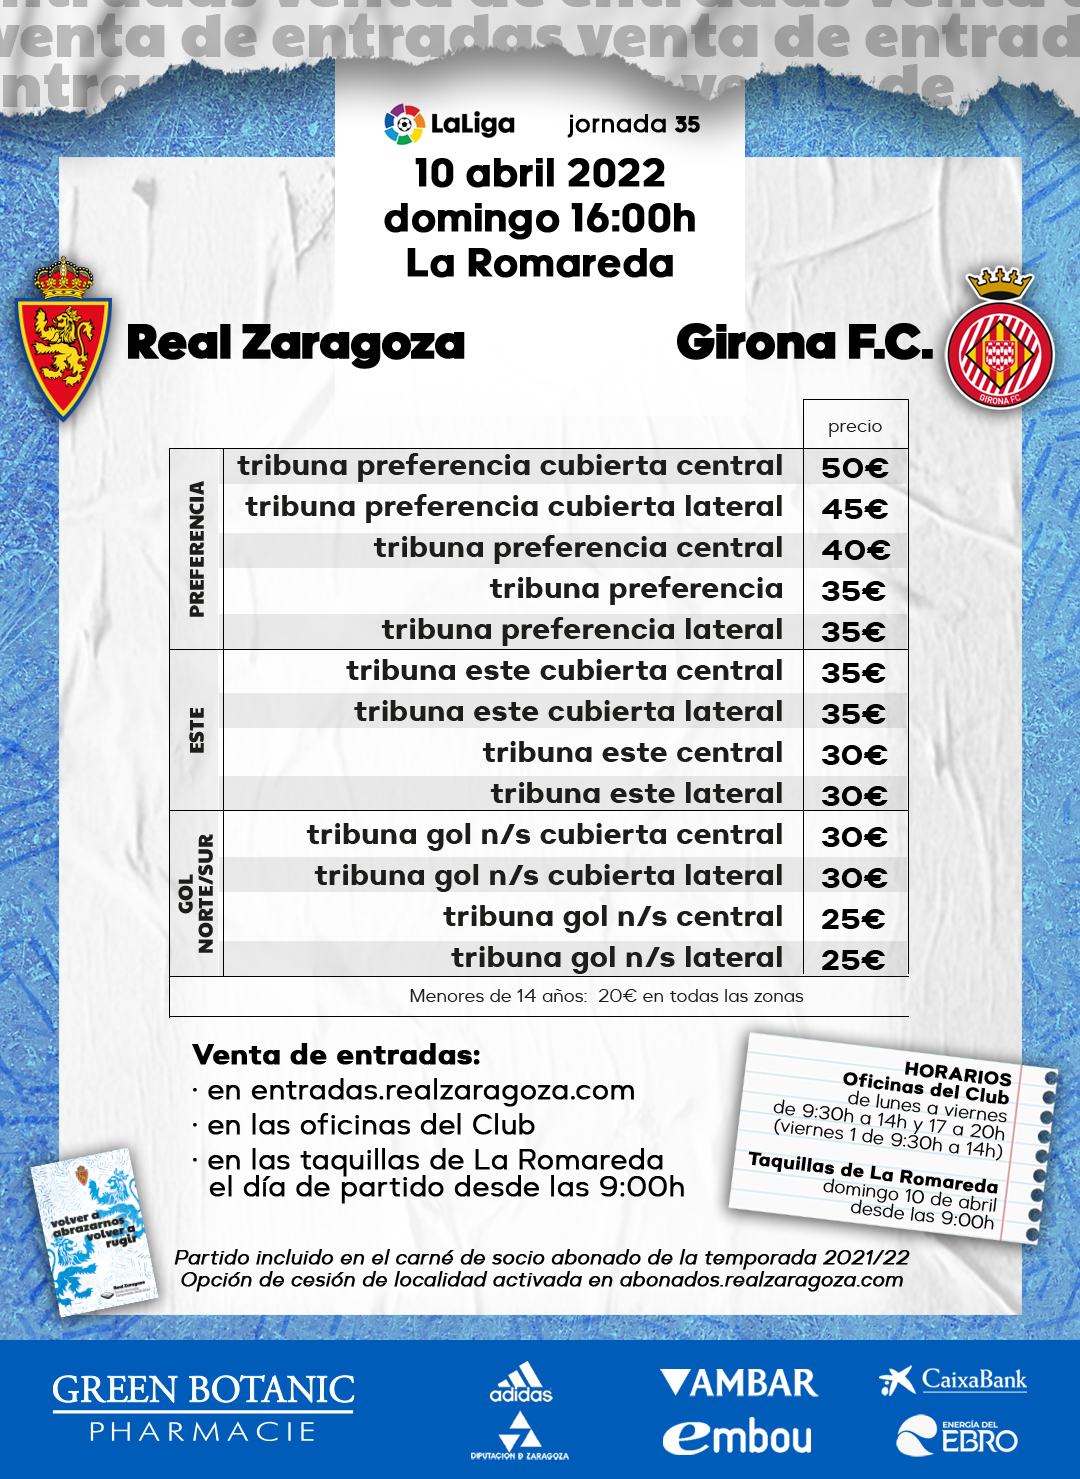 Entradas Real Zaragoza y Experiencias en el estadio La Romareda